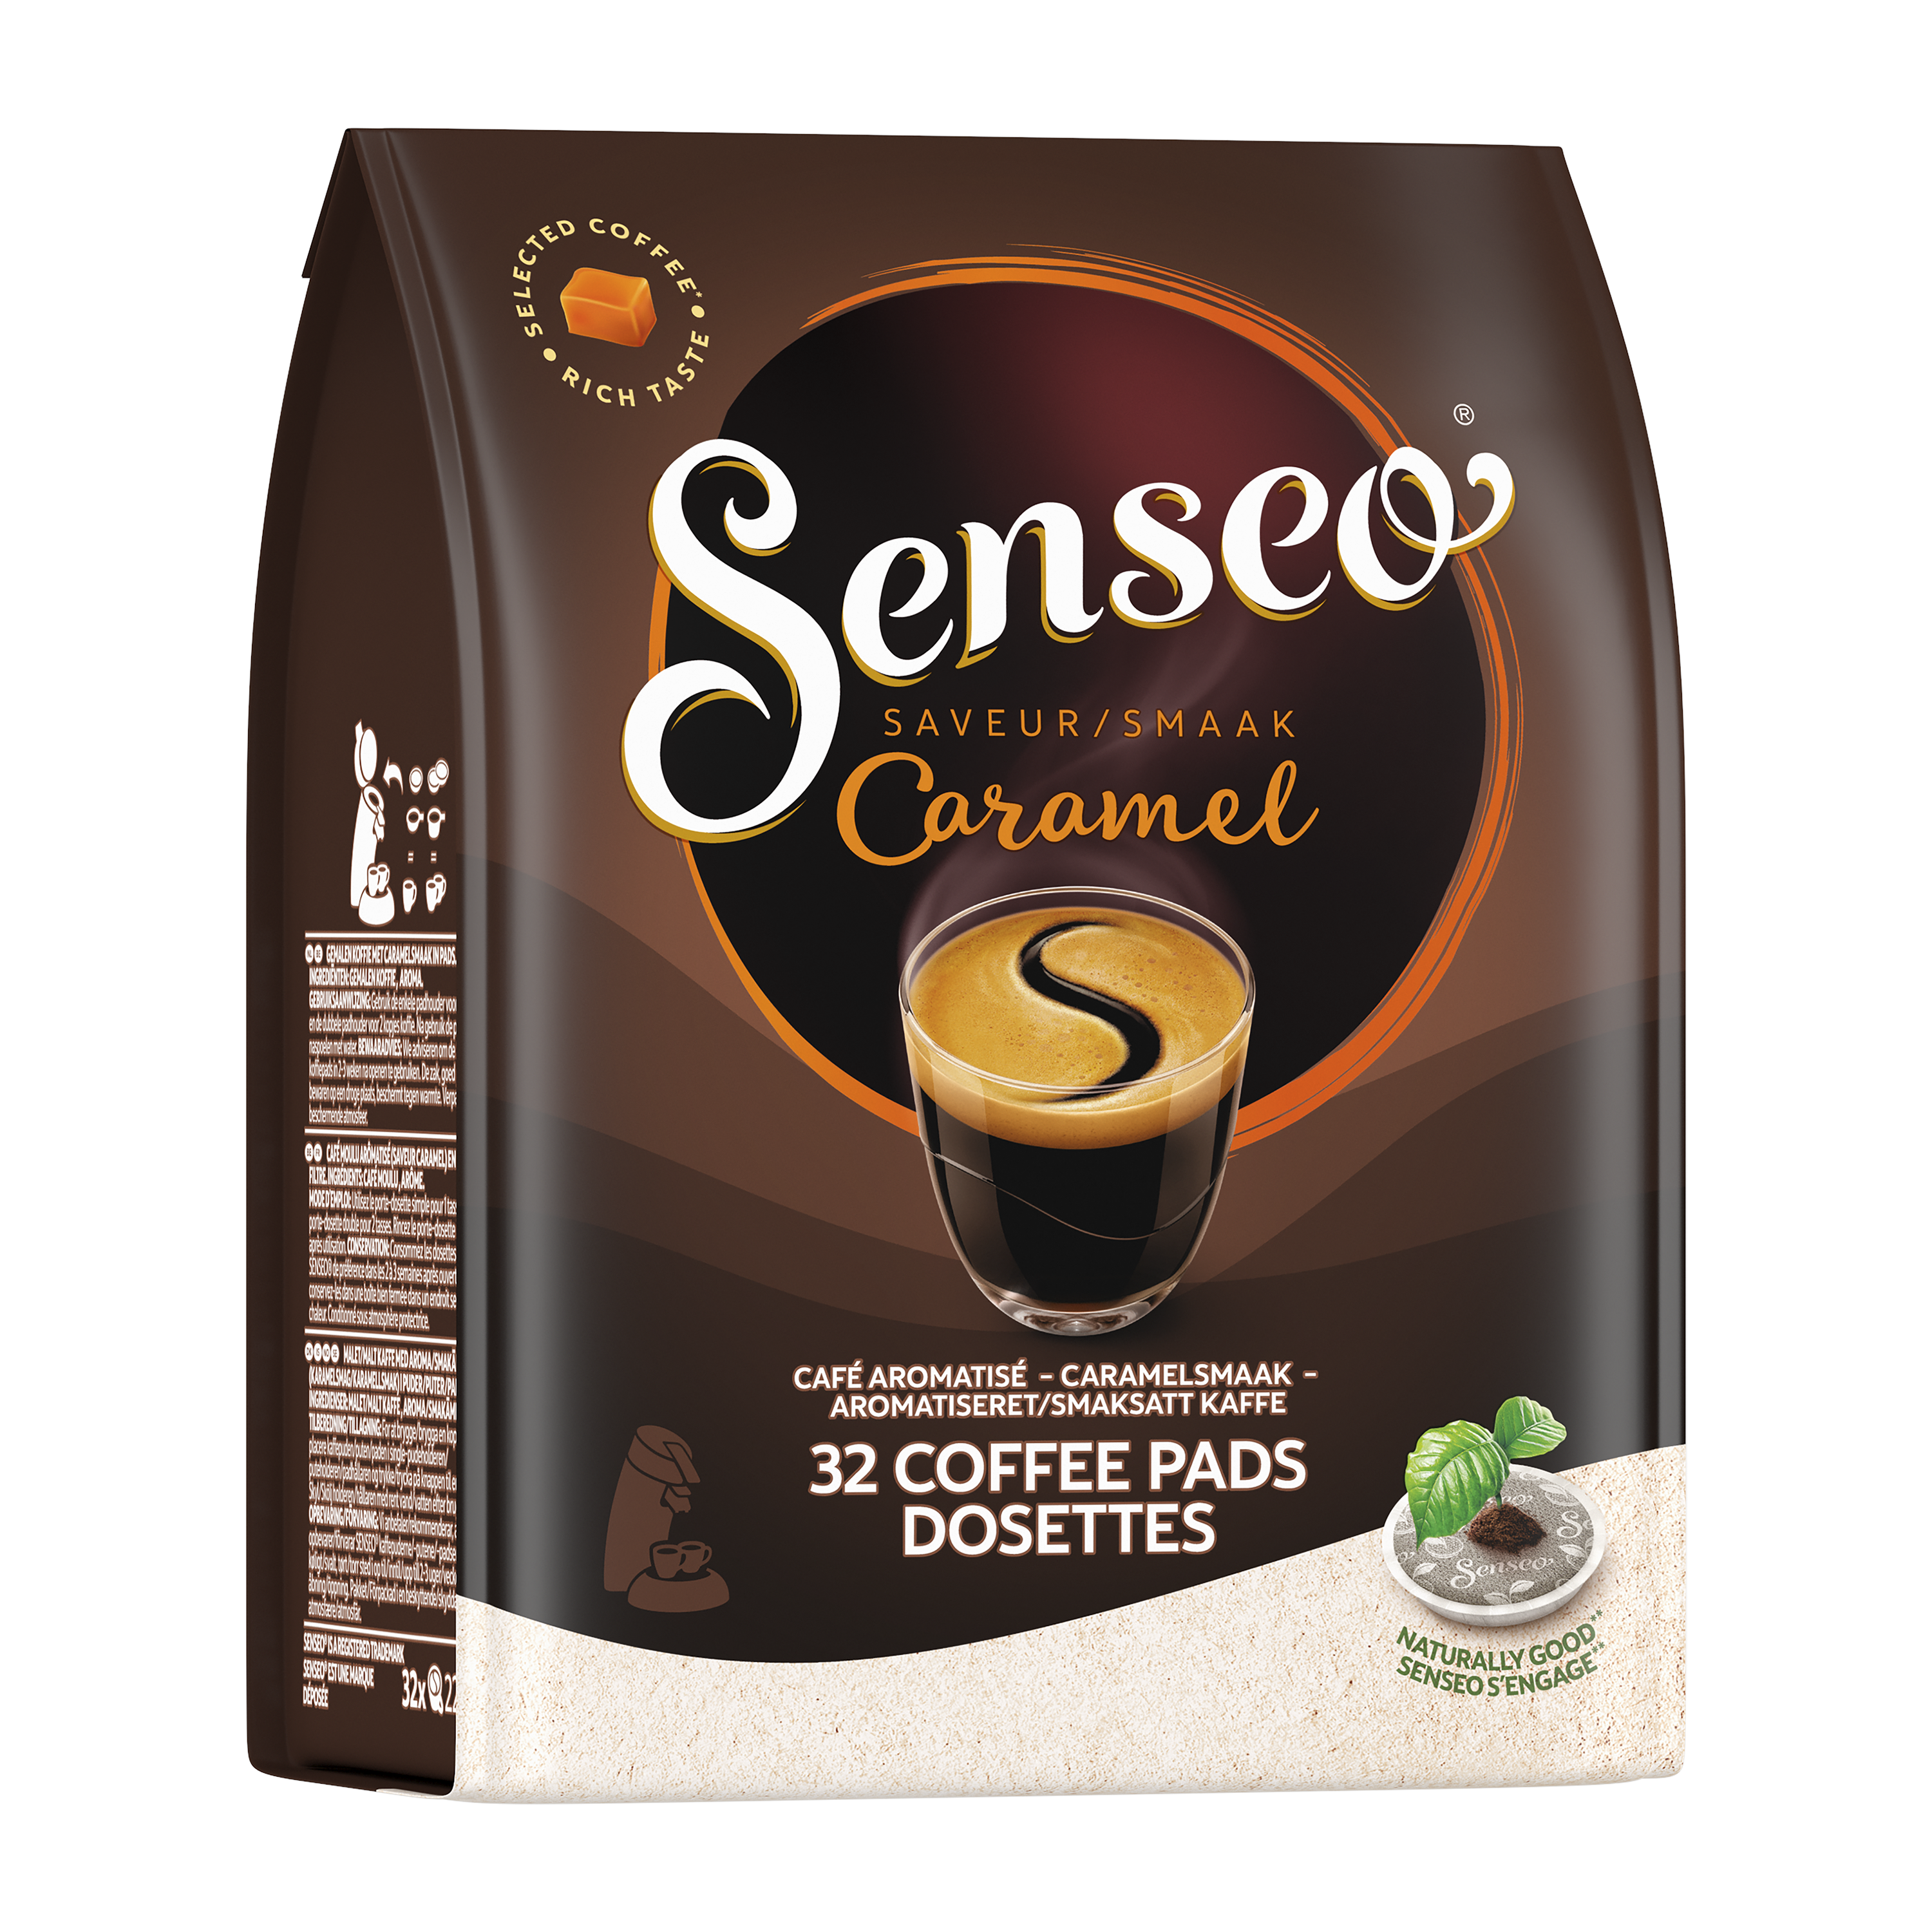 Senseo Café Cappuccino x8 dosettes 